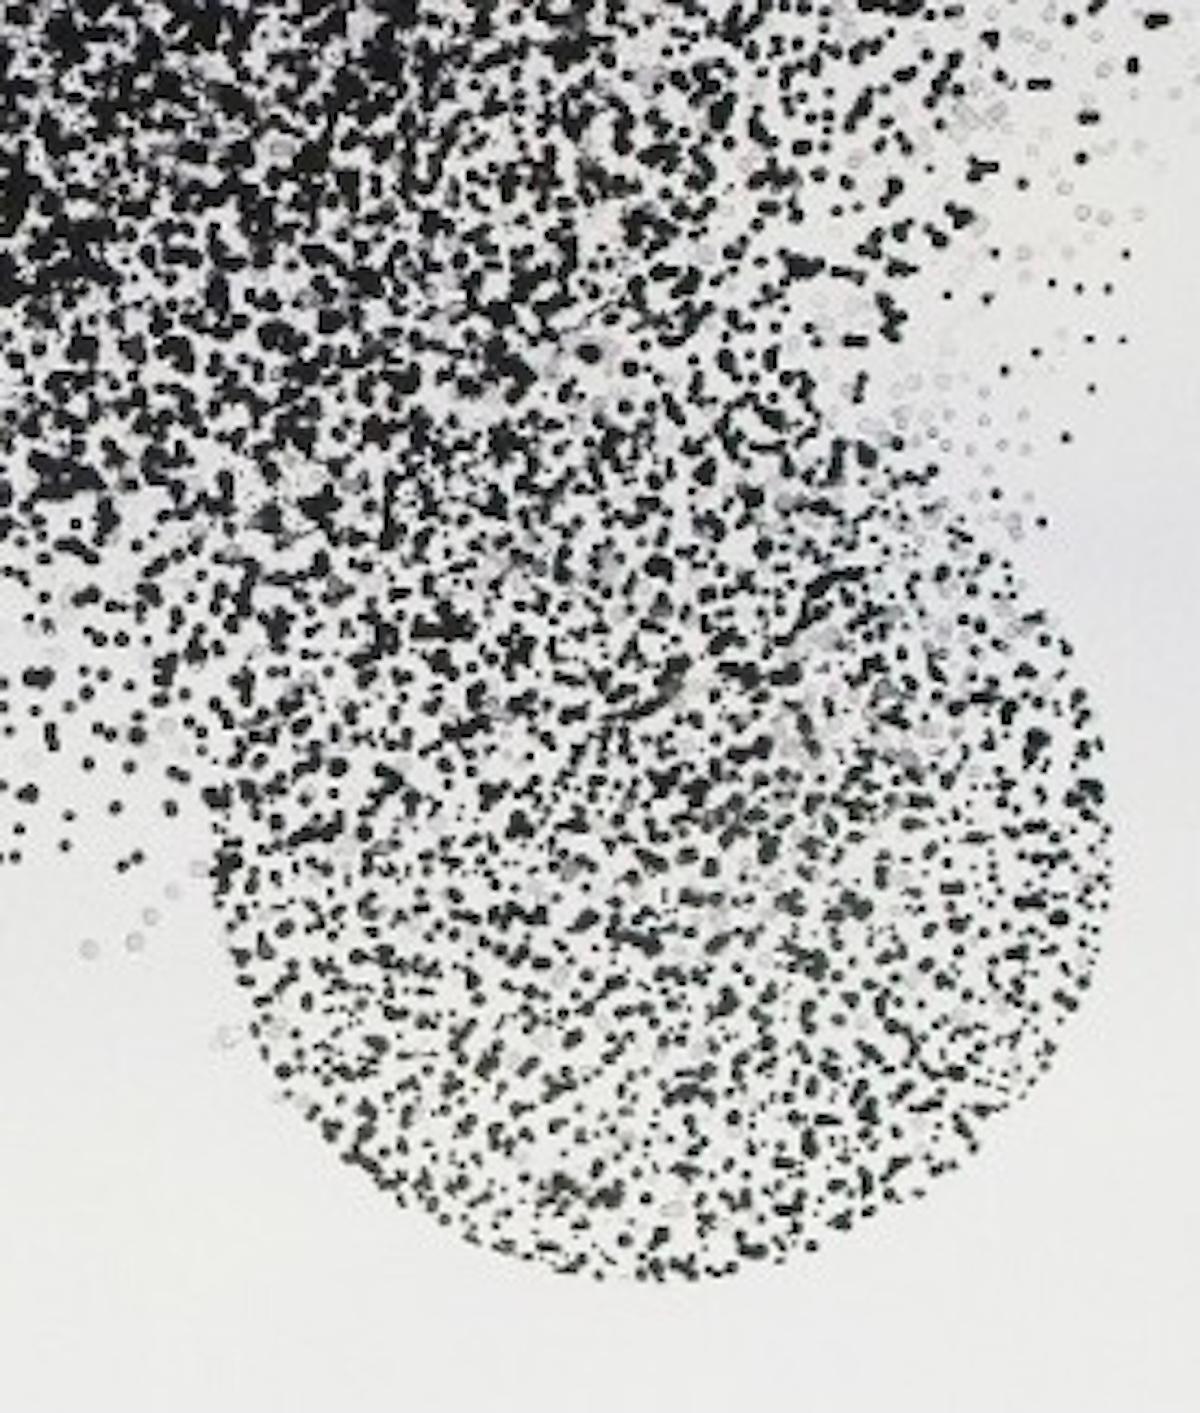 Dessin de constellations d'étoiles (vues à travers un télescope) par Nigel Bird.

Les œuvres originales de Nigel Bird sont disponibles auprès de Wychwood Art à la fois en ligne et dans notre galerie. Nigel a étudié les beaux-arts (sculpture et